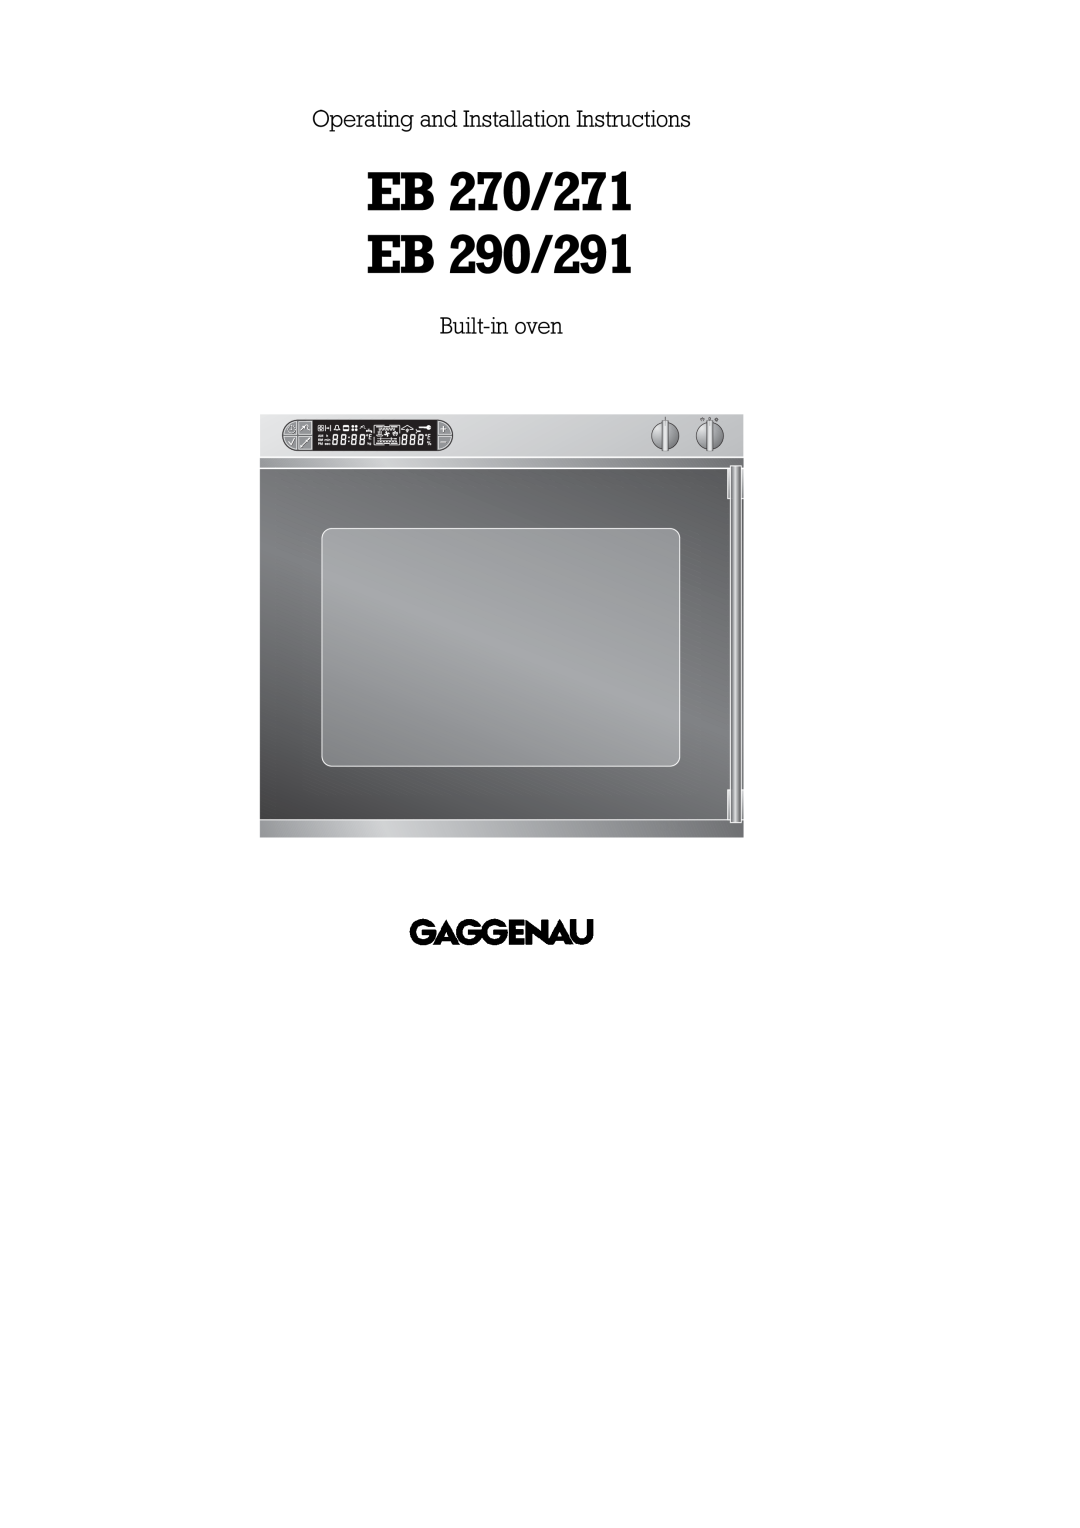 Gaggenau EB 270/271, EB 290/291 installation instructions Operating and Installation Instructions, Built-in oven 